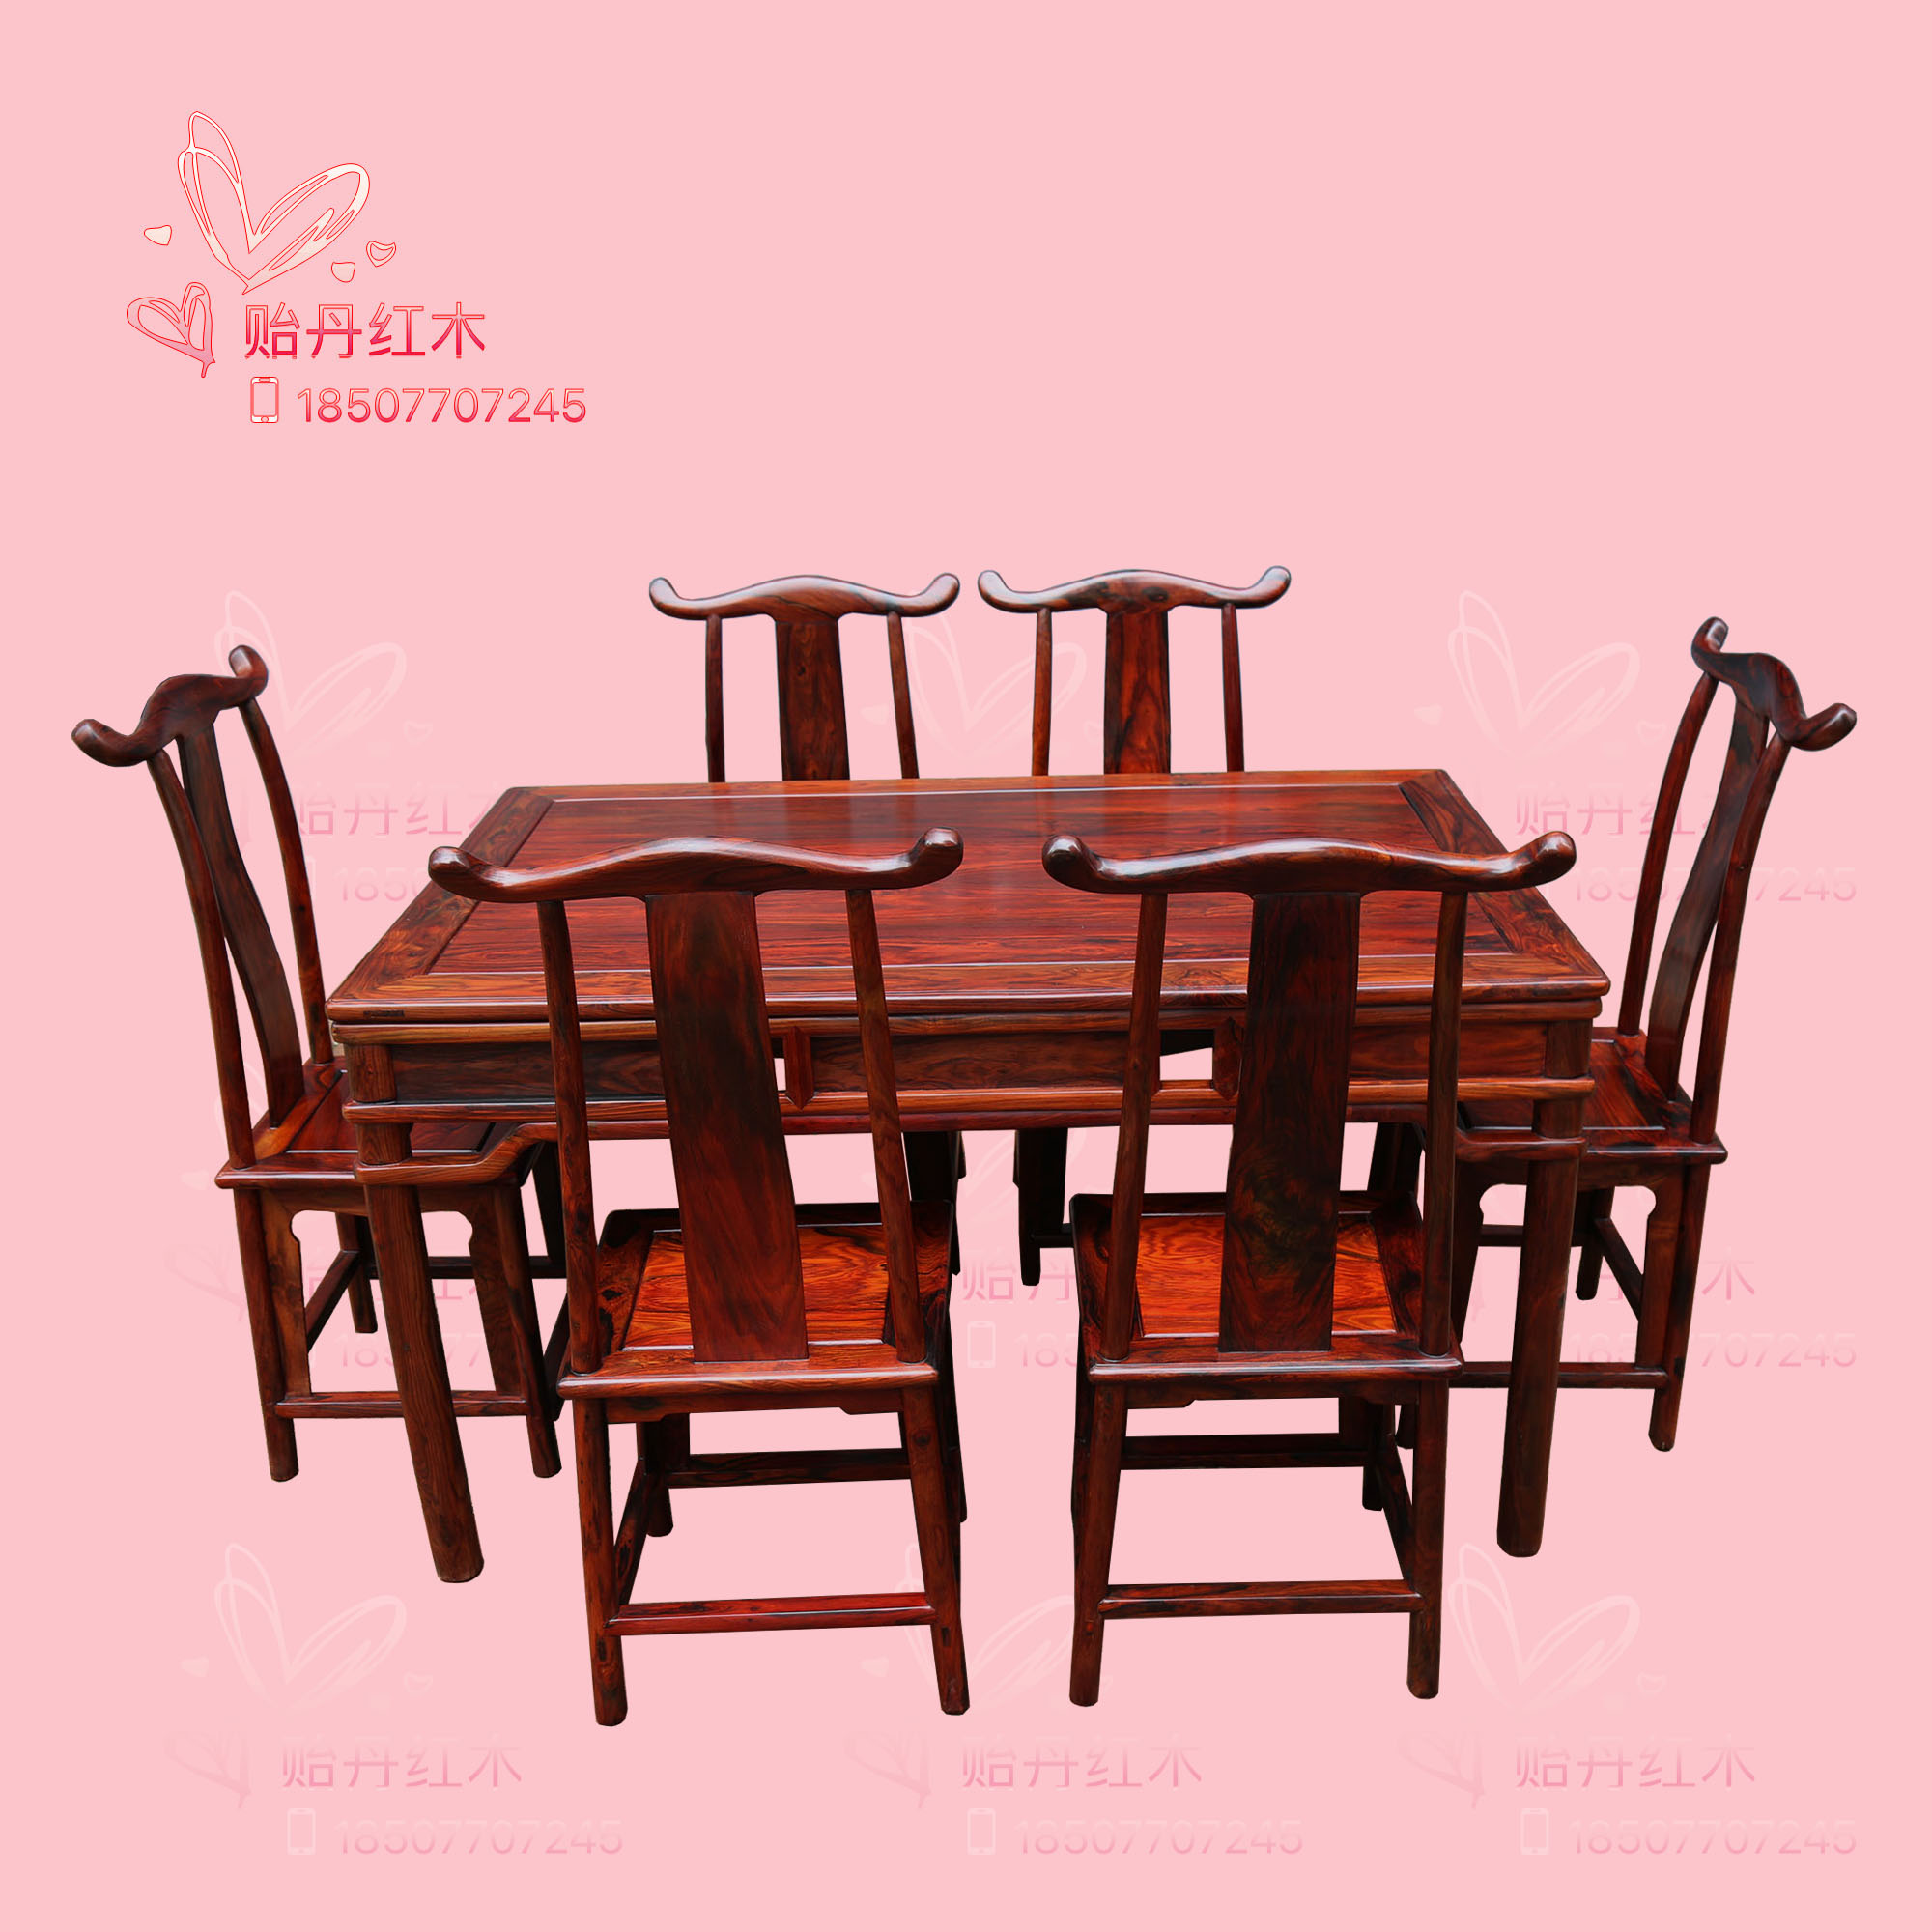 老挝大红酸枝餐桌 交趾黄檀饭台七件套 老红木家具餐桌官帽椅七件